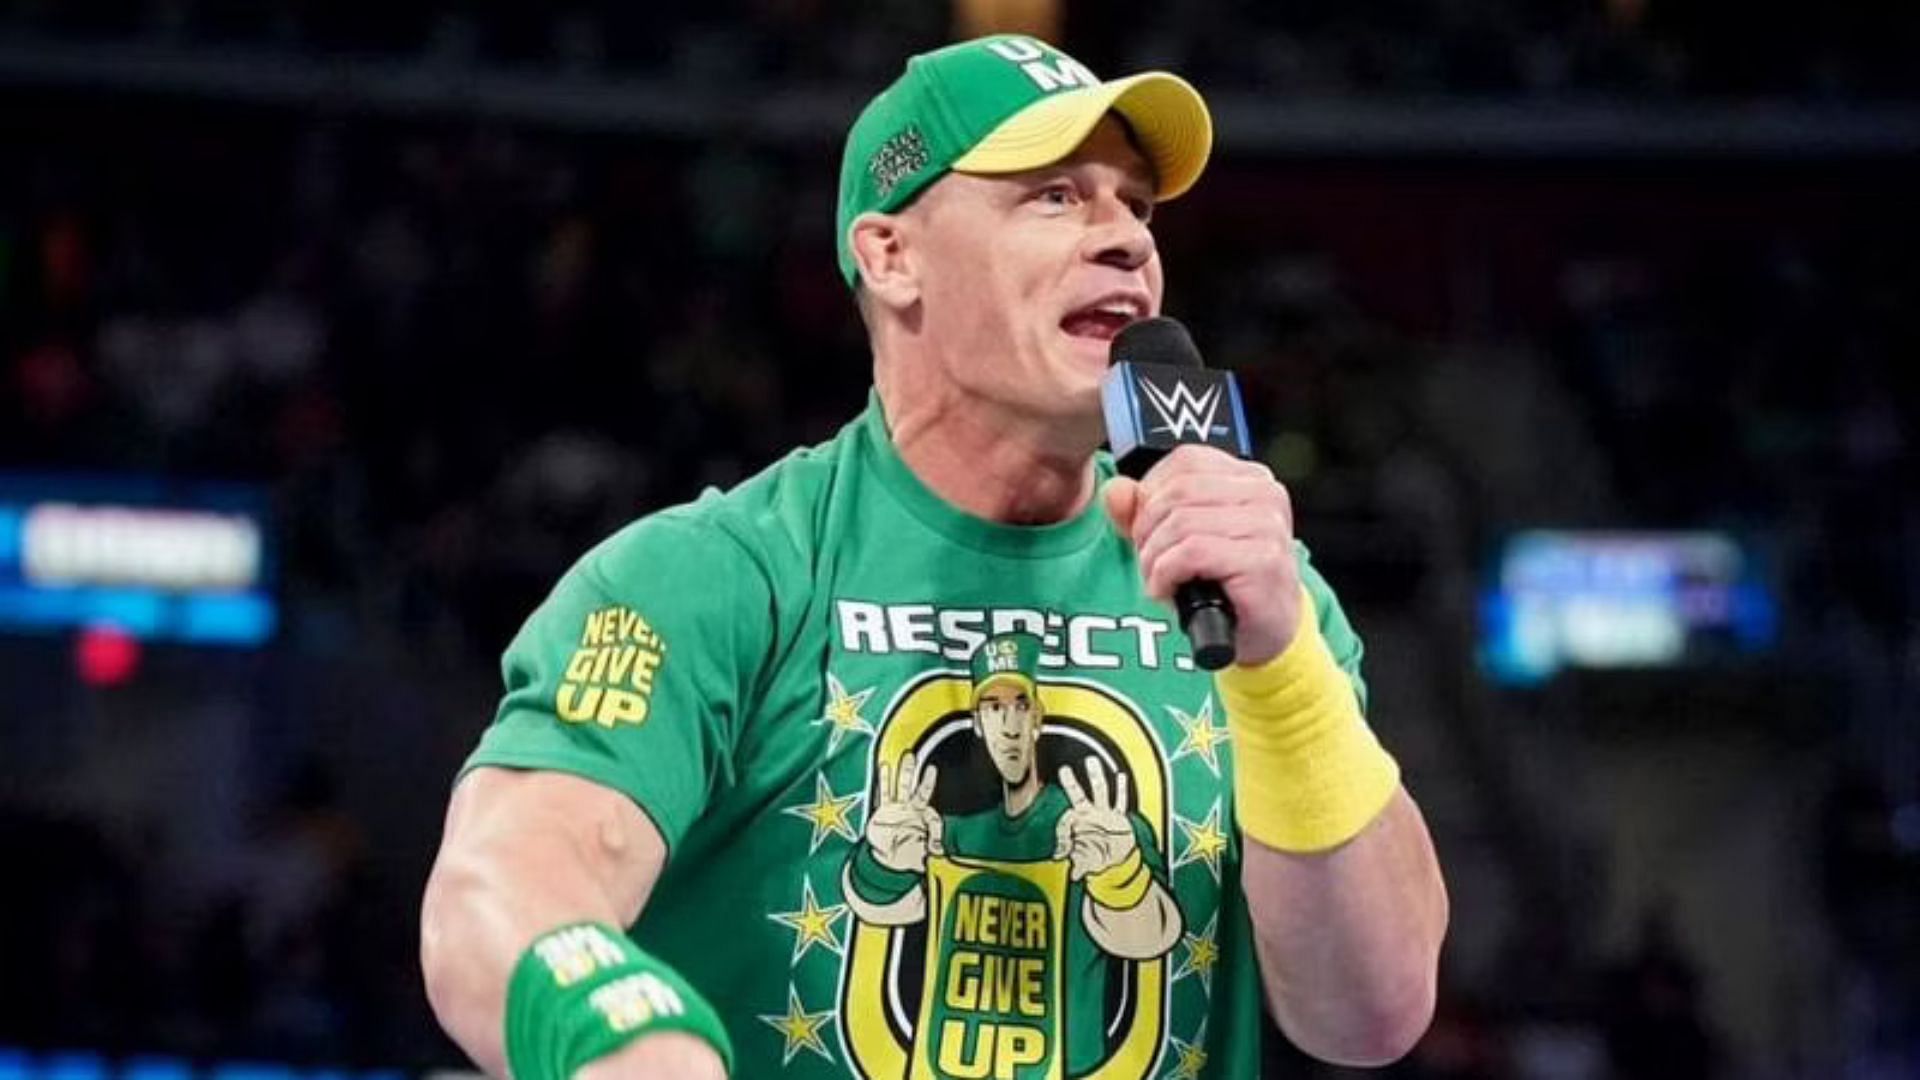 John Cena has inspired a generation of future WWE stars